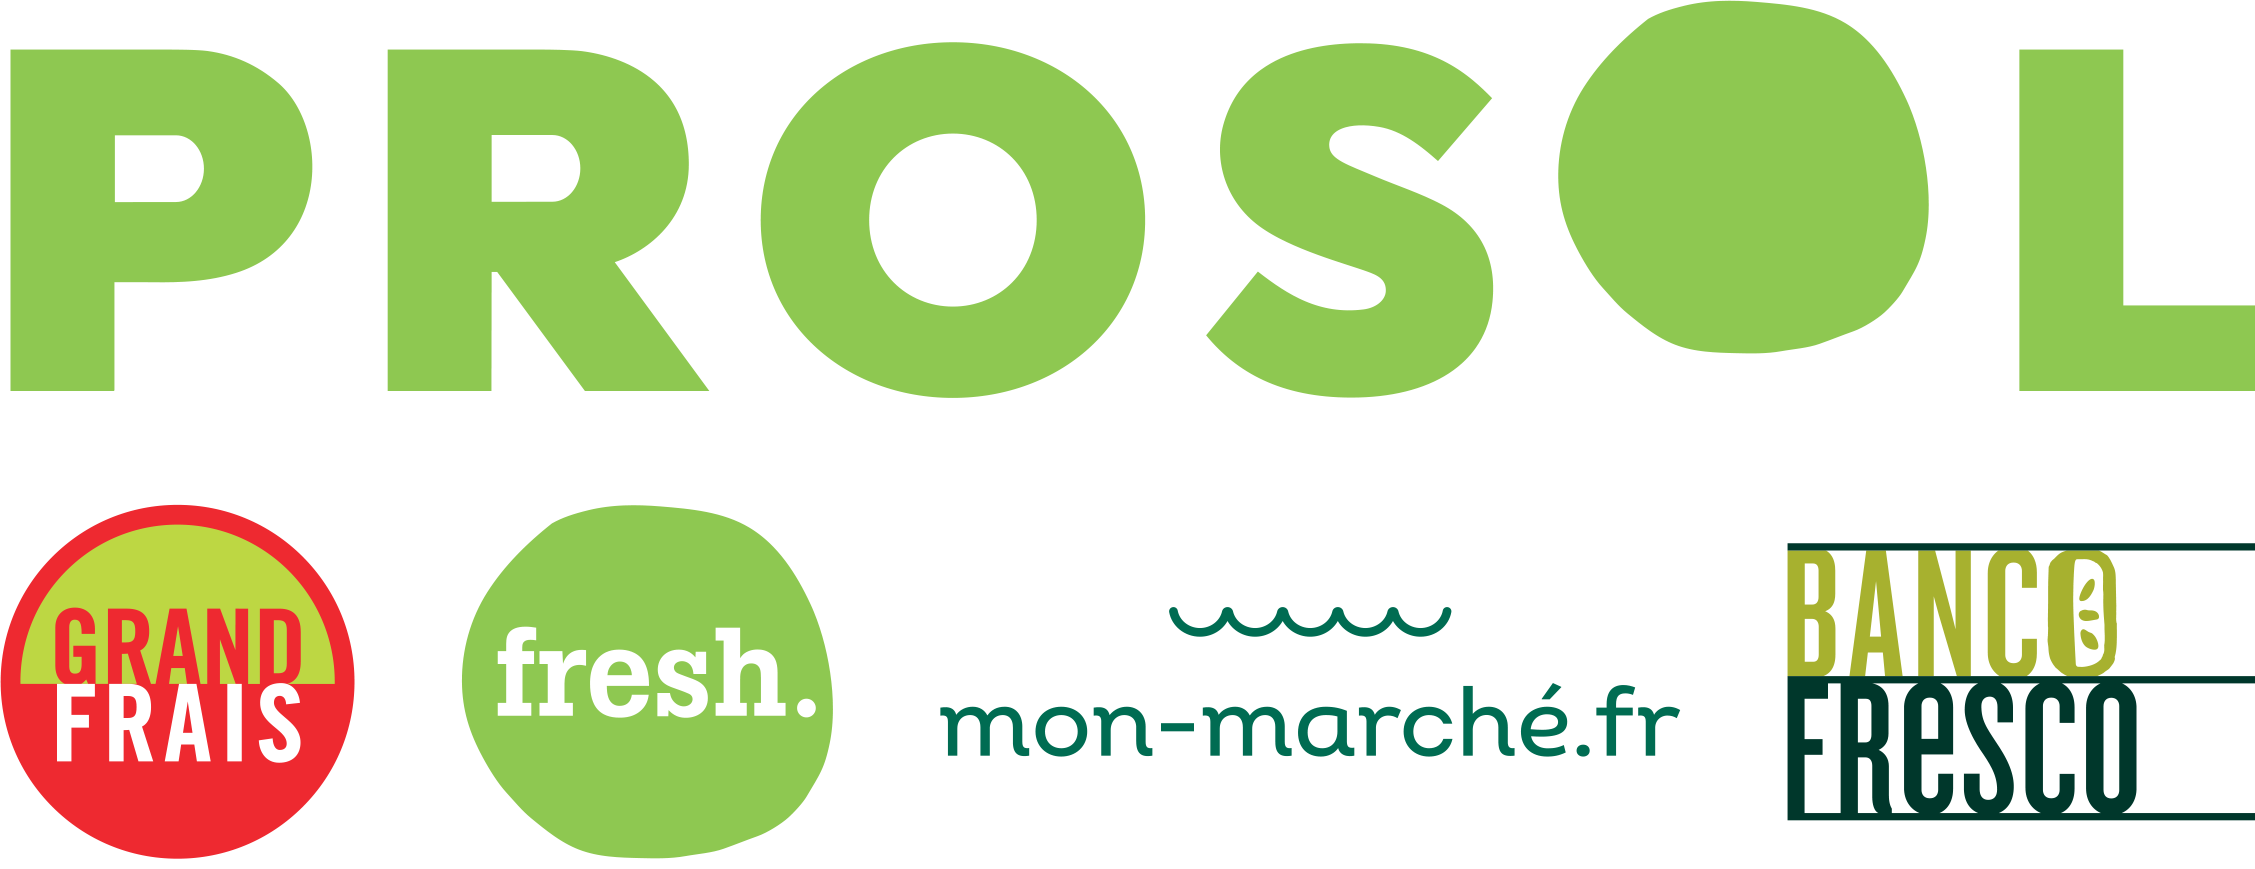 logo Prosol